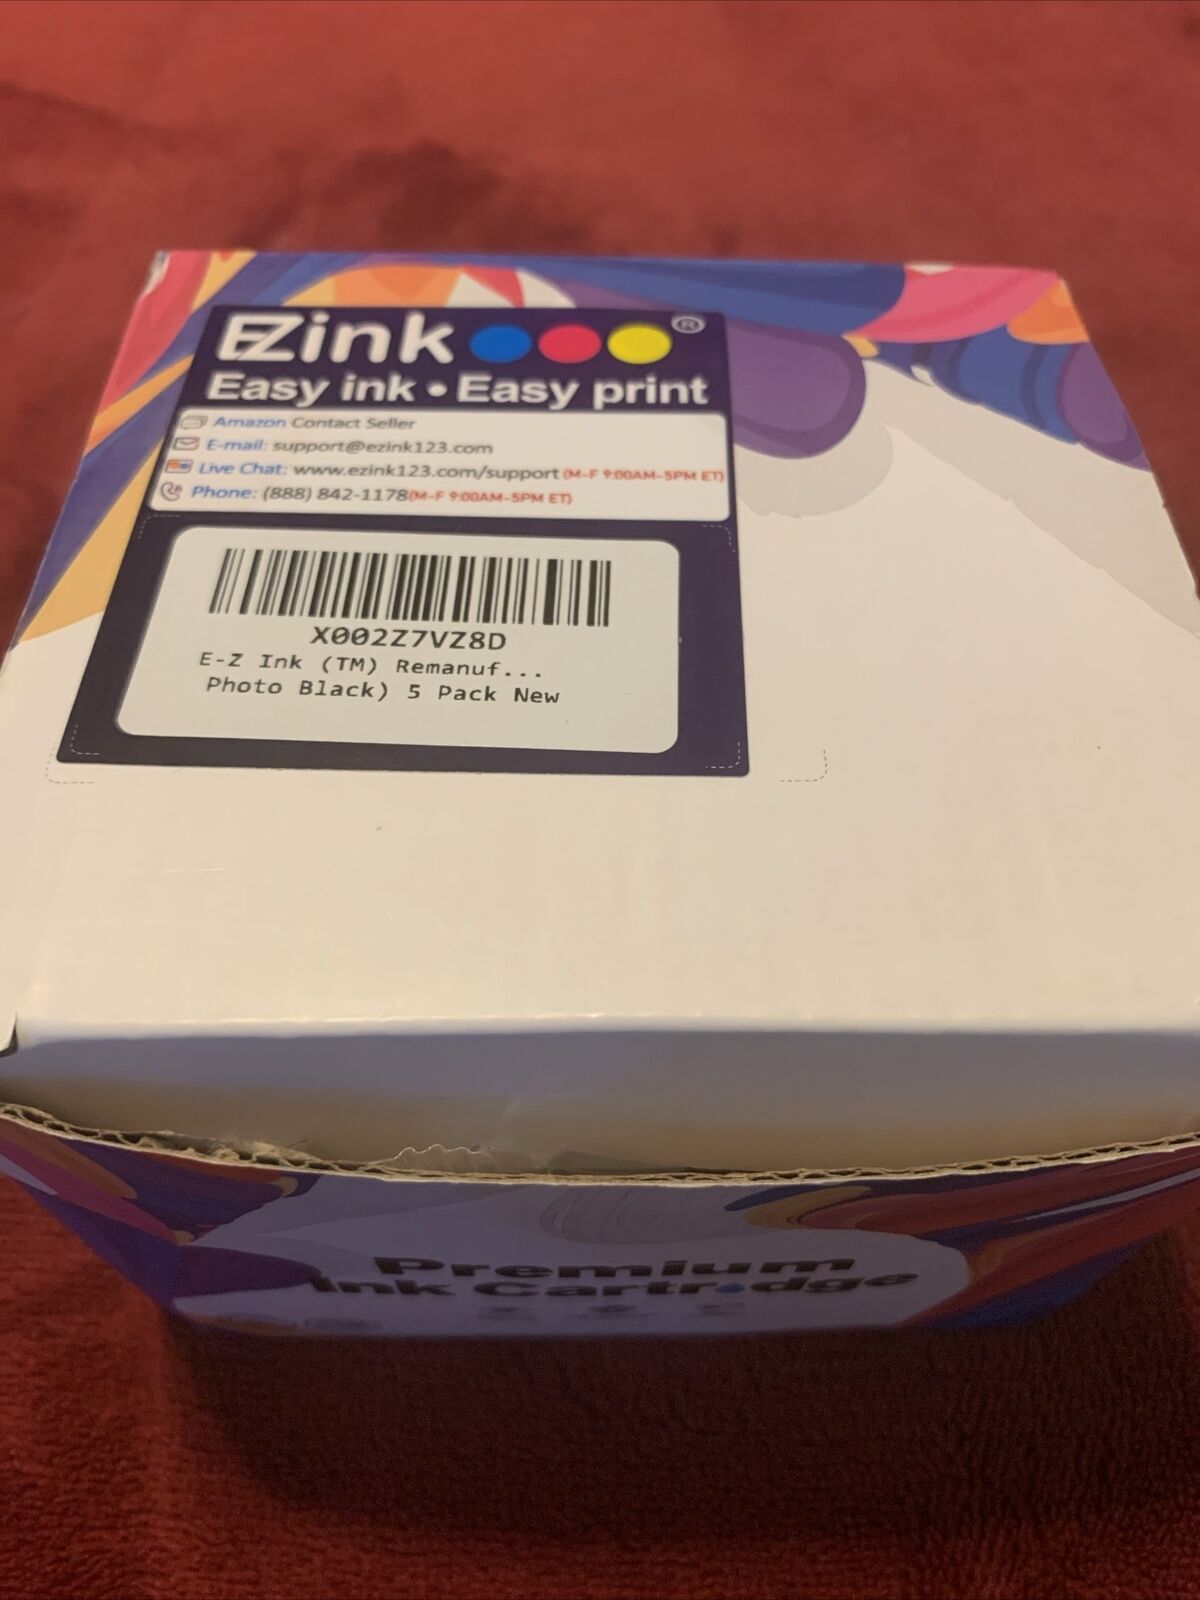 EZ ink 273XL 3 Pack Black, Cyan, Magenta, Brand New Still Sealed